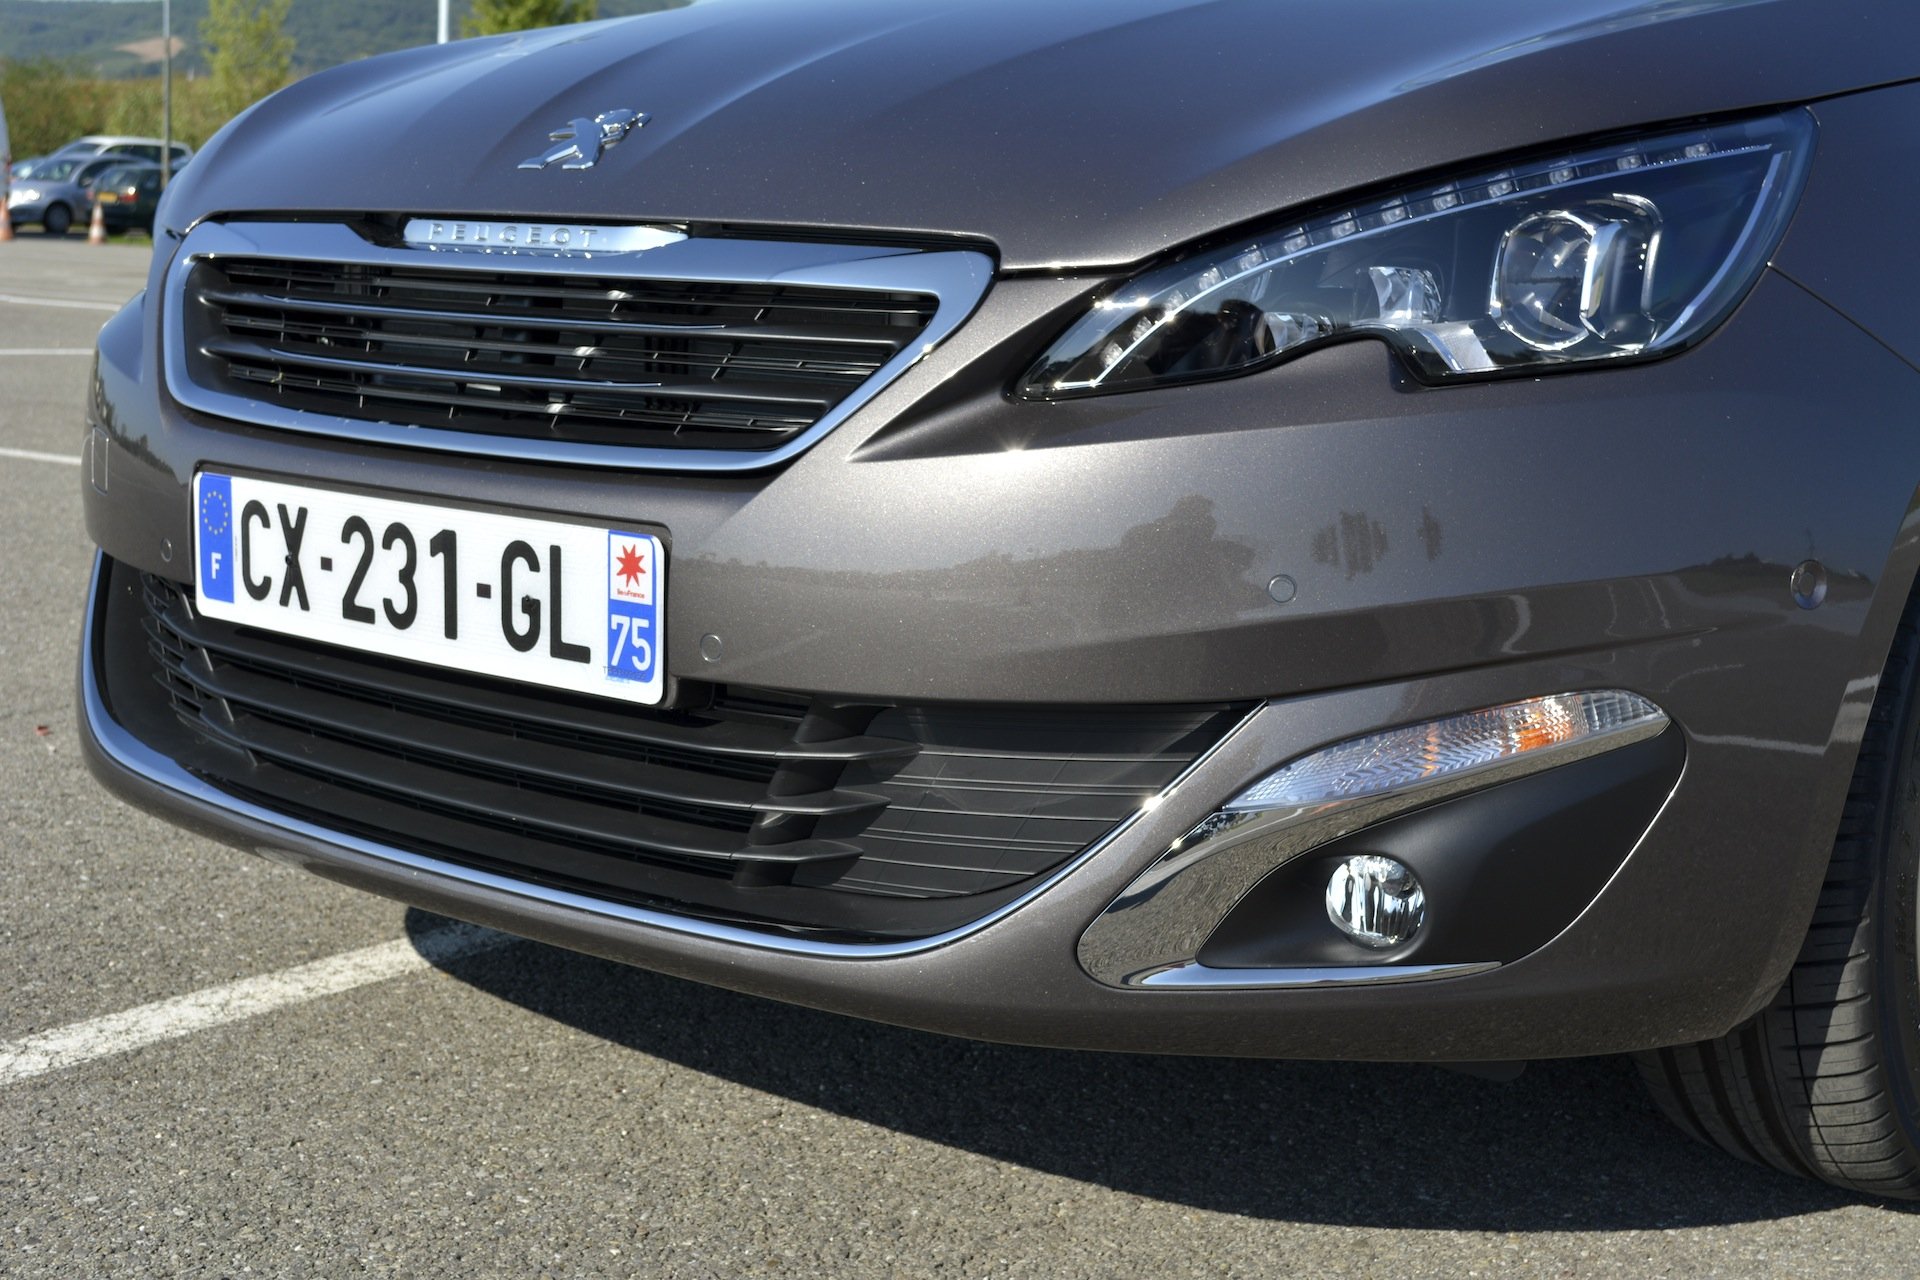 Image 19 : [Test] Nouvelle 308 : Le high-tech s’invite chez Peugeot